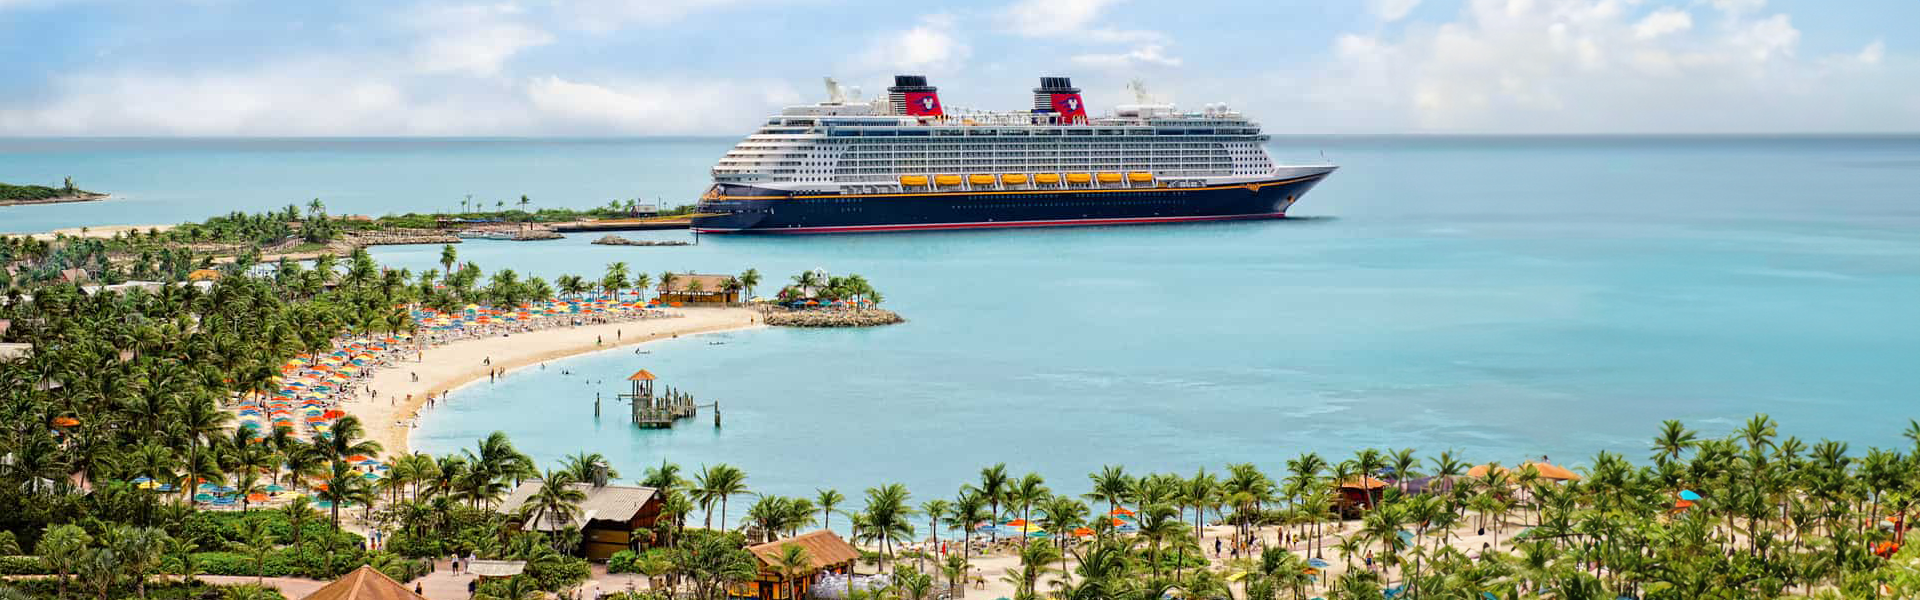 Познакомьтесь с нашими предложениями по волшебным кораблям Disney!